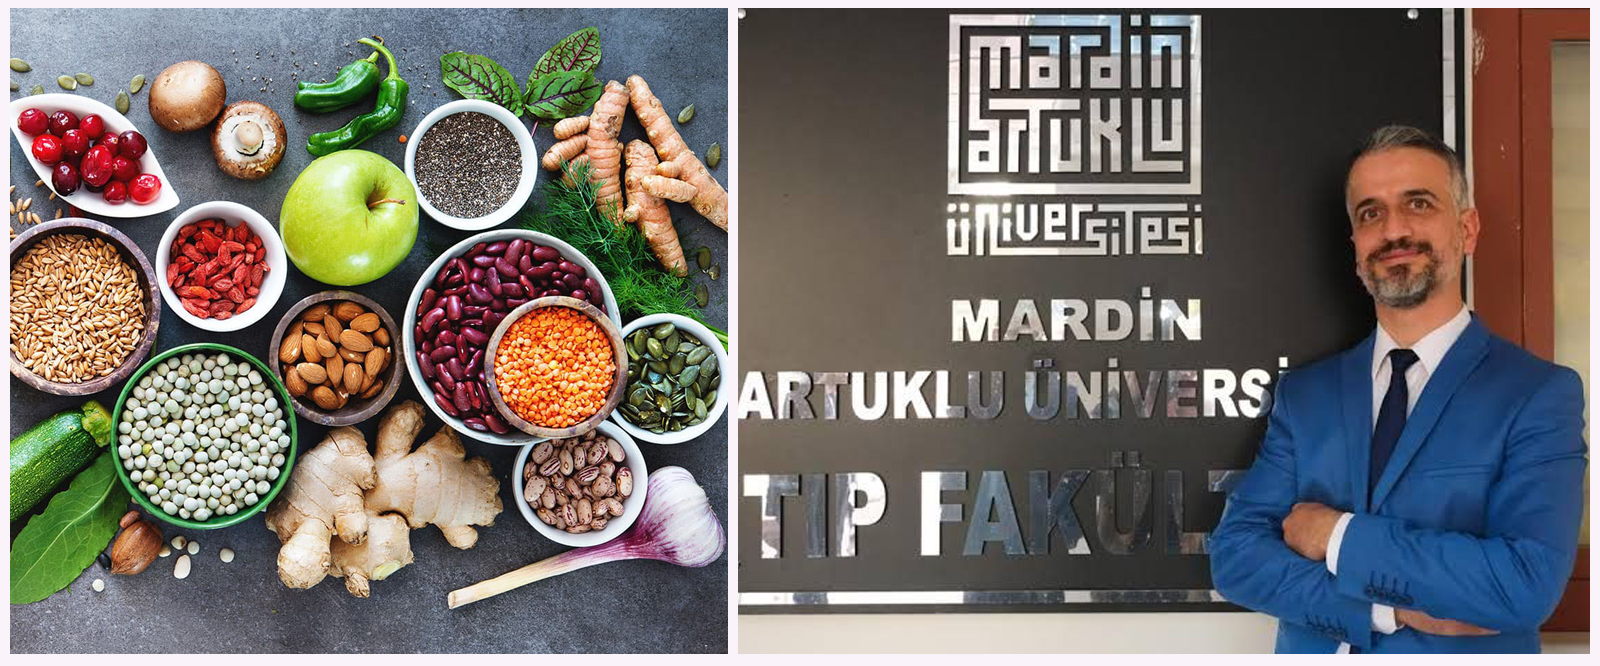 Mardin Artuklu Üniversitesi Tıp